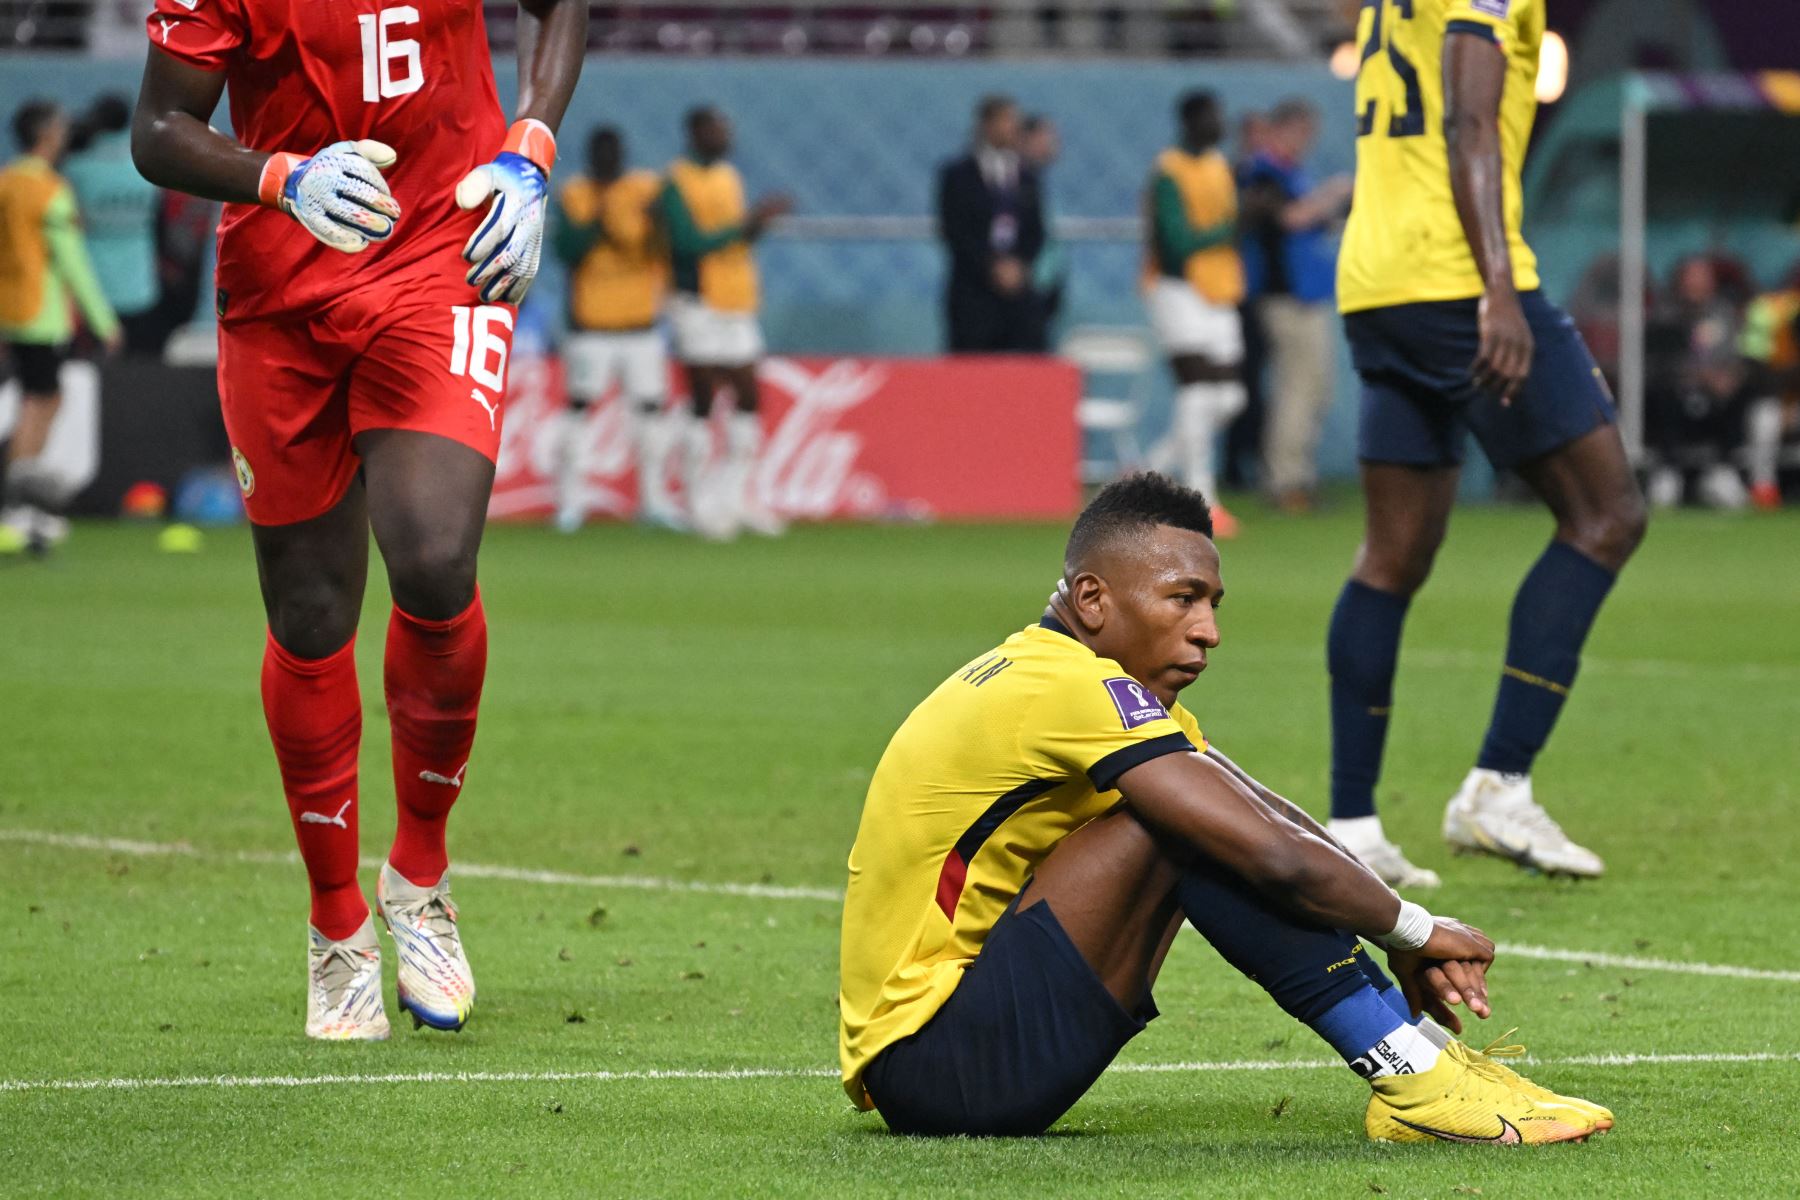 Ecuador eliminado del Mundial al caer con Senegal, que pasa a octavos junto a Países Bajos